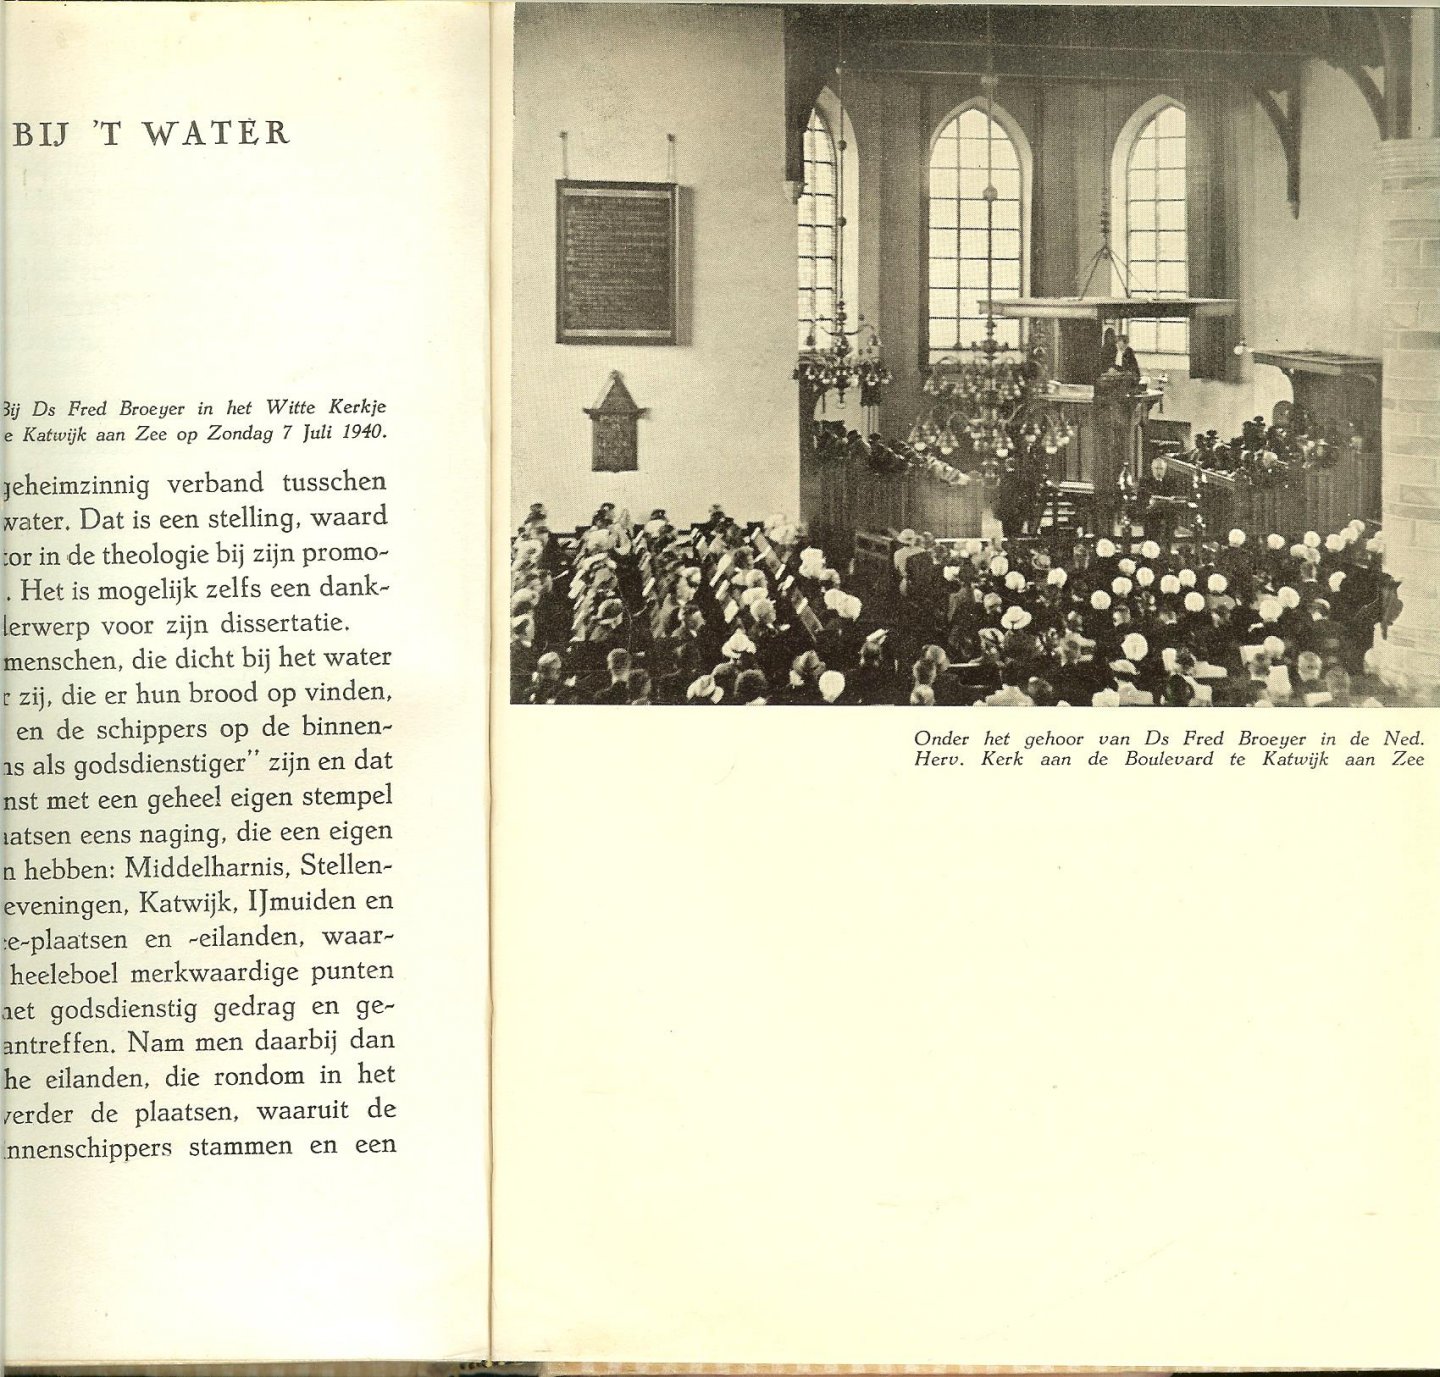 Stoep, D. van der - Felderhof, H.H.  met diversen fotos van H. Lamme - In de houten broek - over dominees, preeken en kerkmenschen -